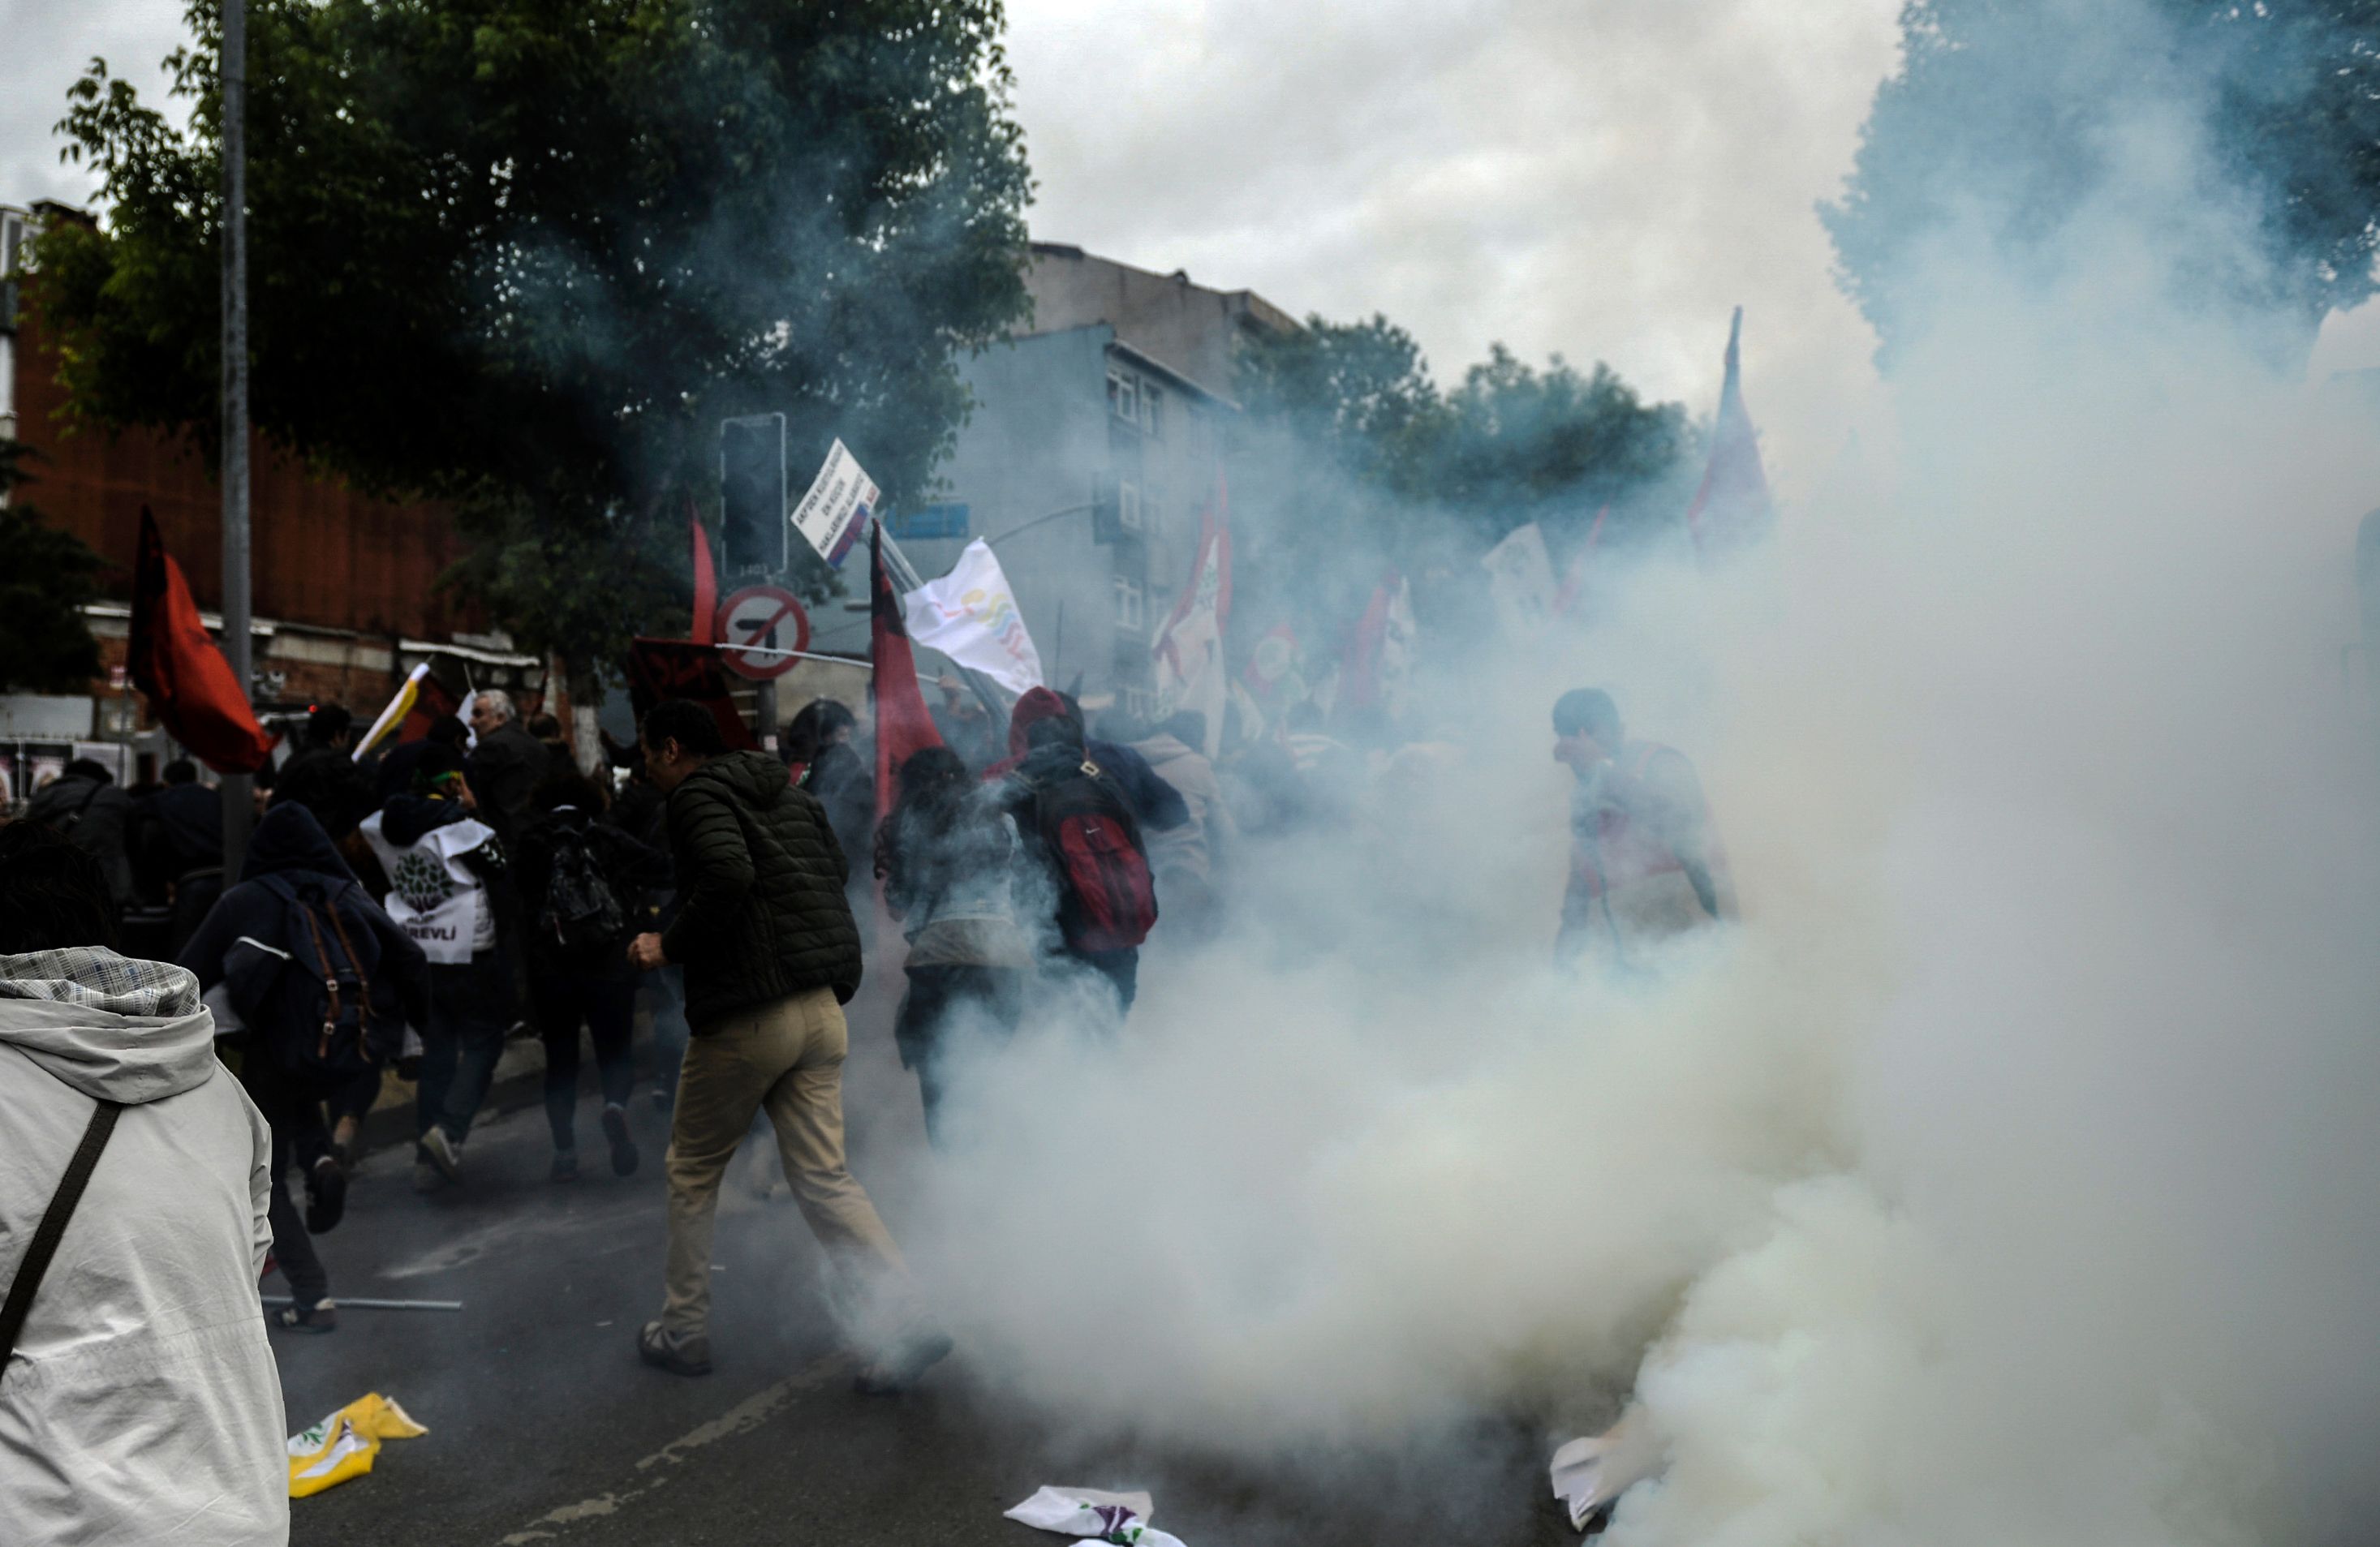  اسطنبول: الشرطة تستخدم الغاز المسيل للدموع ضد متظاهرين